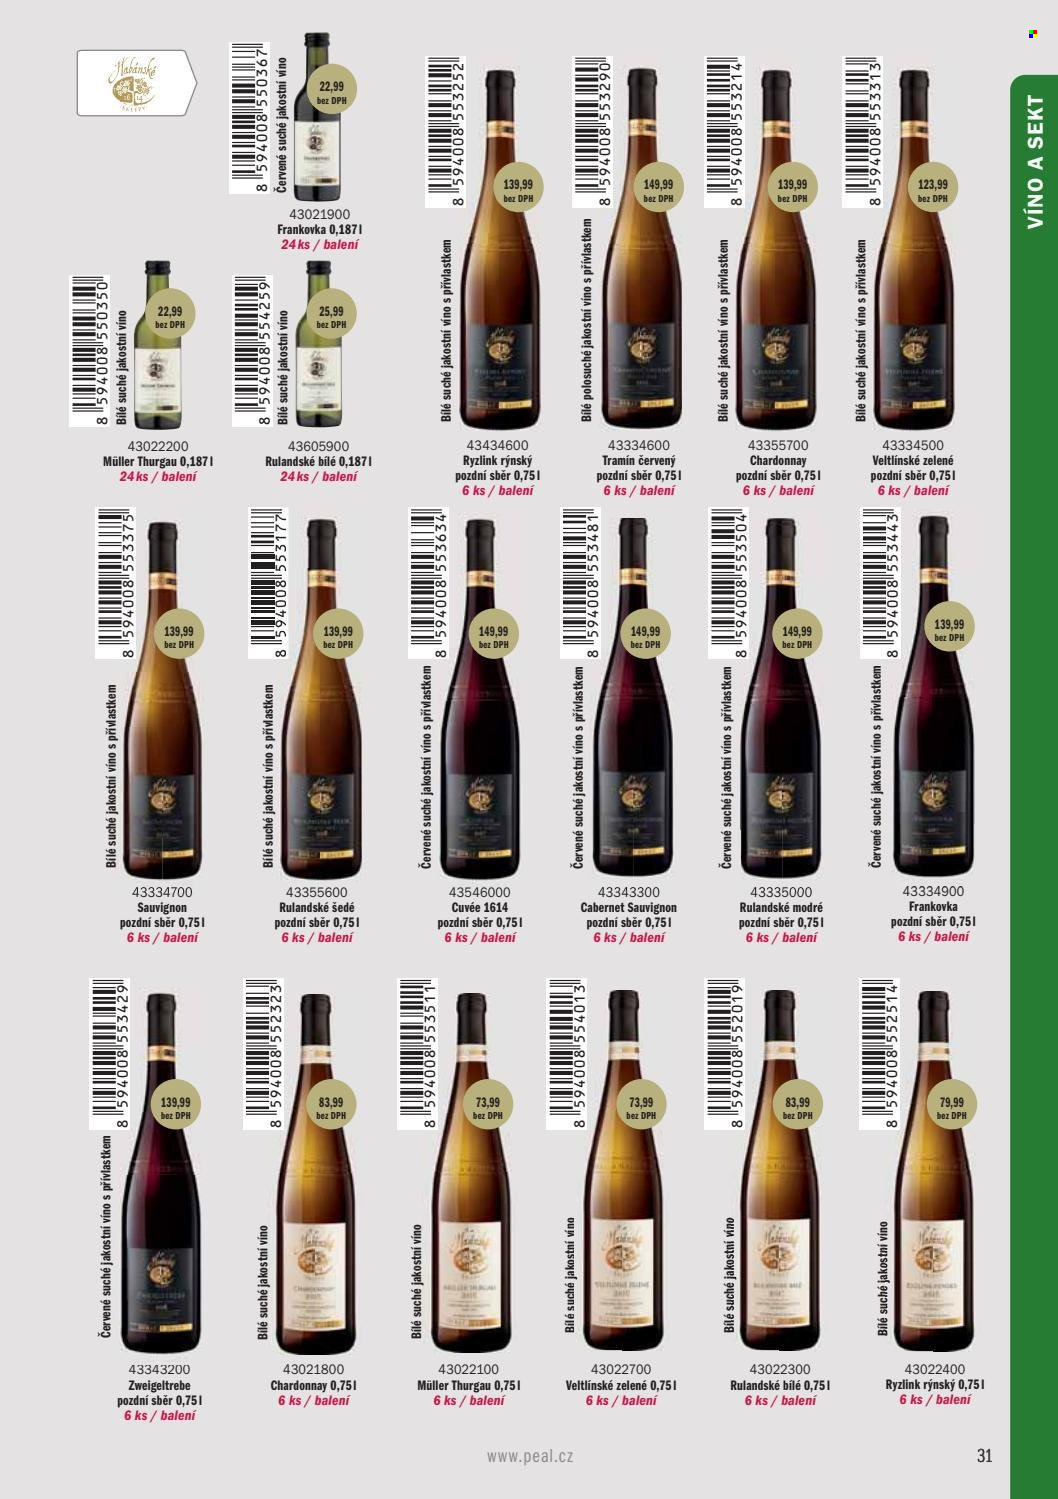 thumbnail - Leták PEAL - Produkty v akci - alkohol, bílé víno, červené víno, sekt, Rulandské šedé, Ryzlink rýnský, Tramín červený, Chardonnay, Müller Thurgau, Rulandské modré, víno, Frankovka, Rulandské bílé, Zweigeltrebe, Veltlínské zelené, Cabernet Sauvignon. Strana 33.